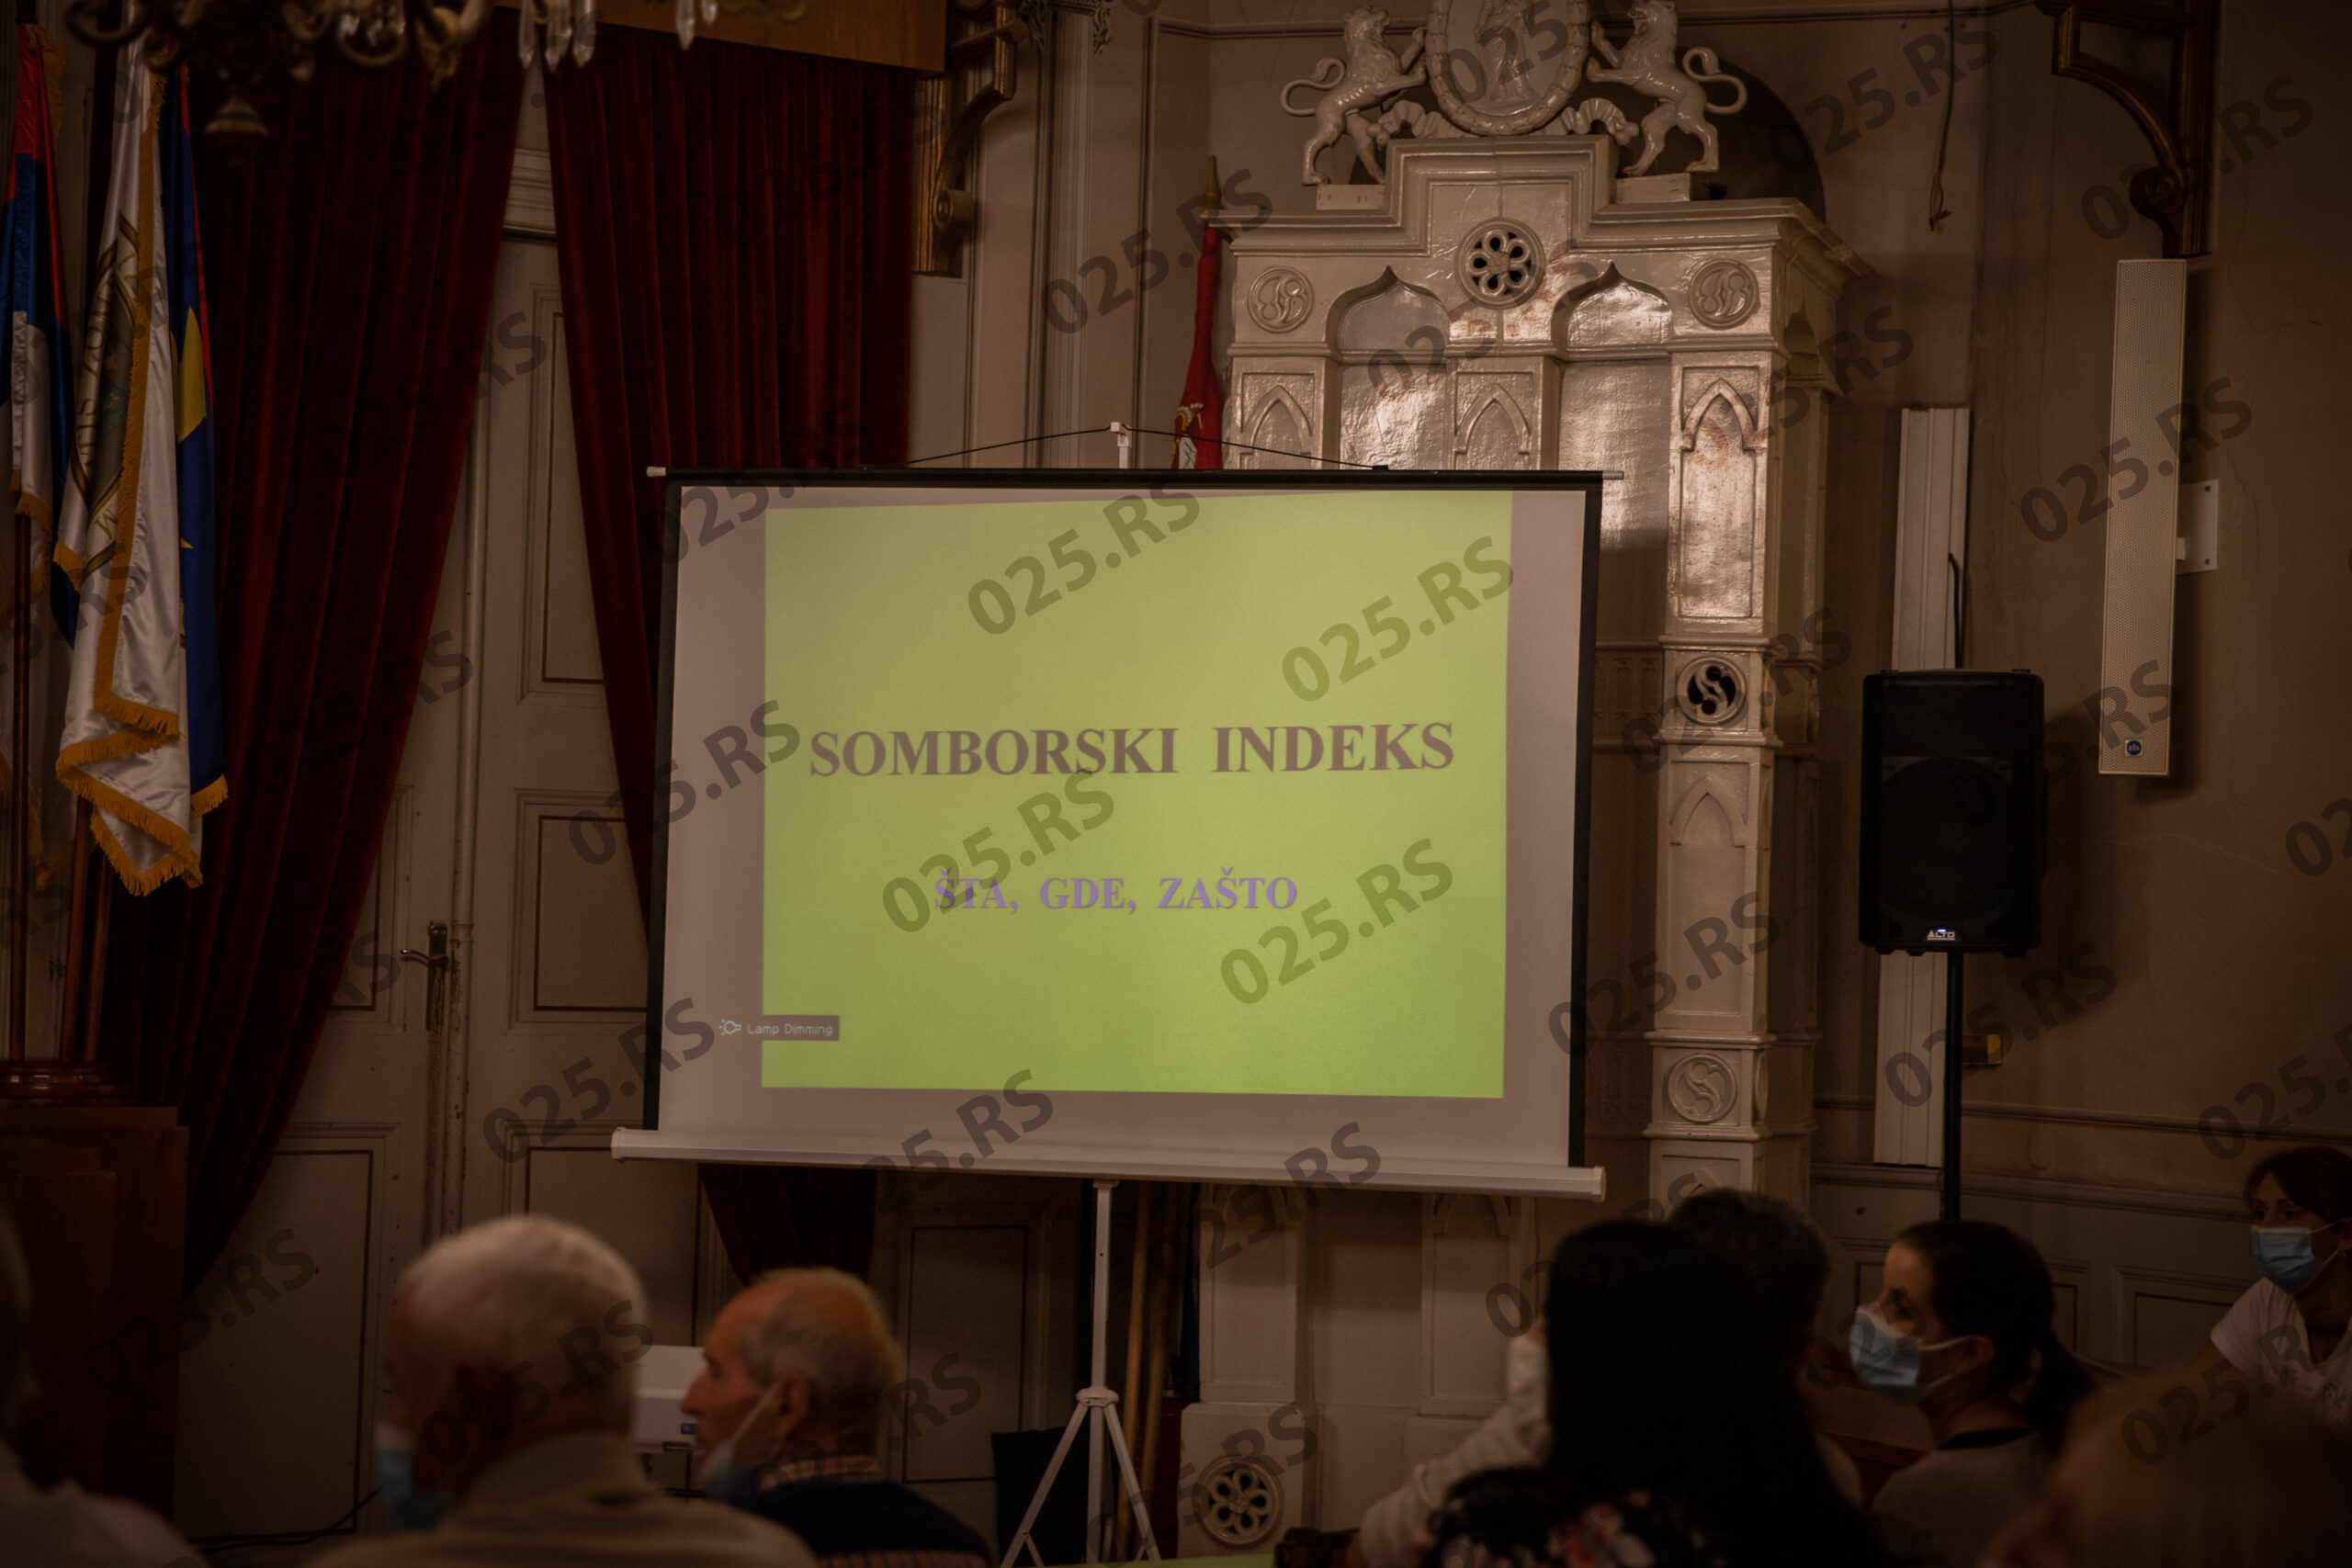 Somborski indeks